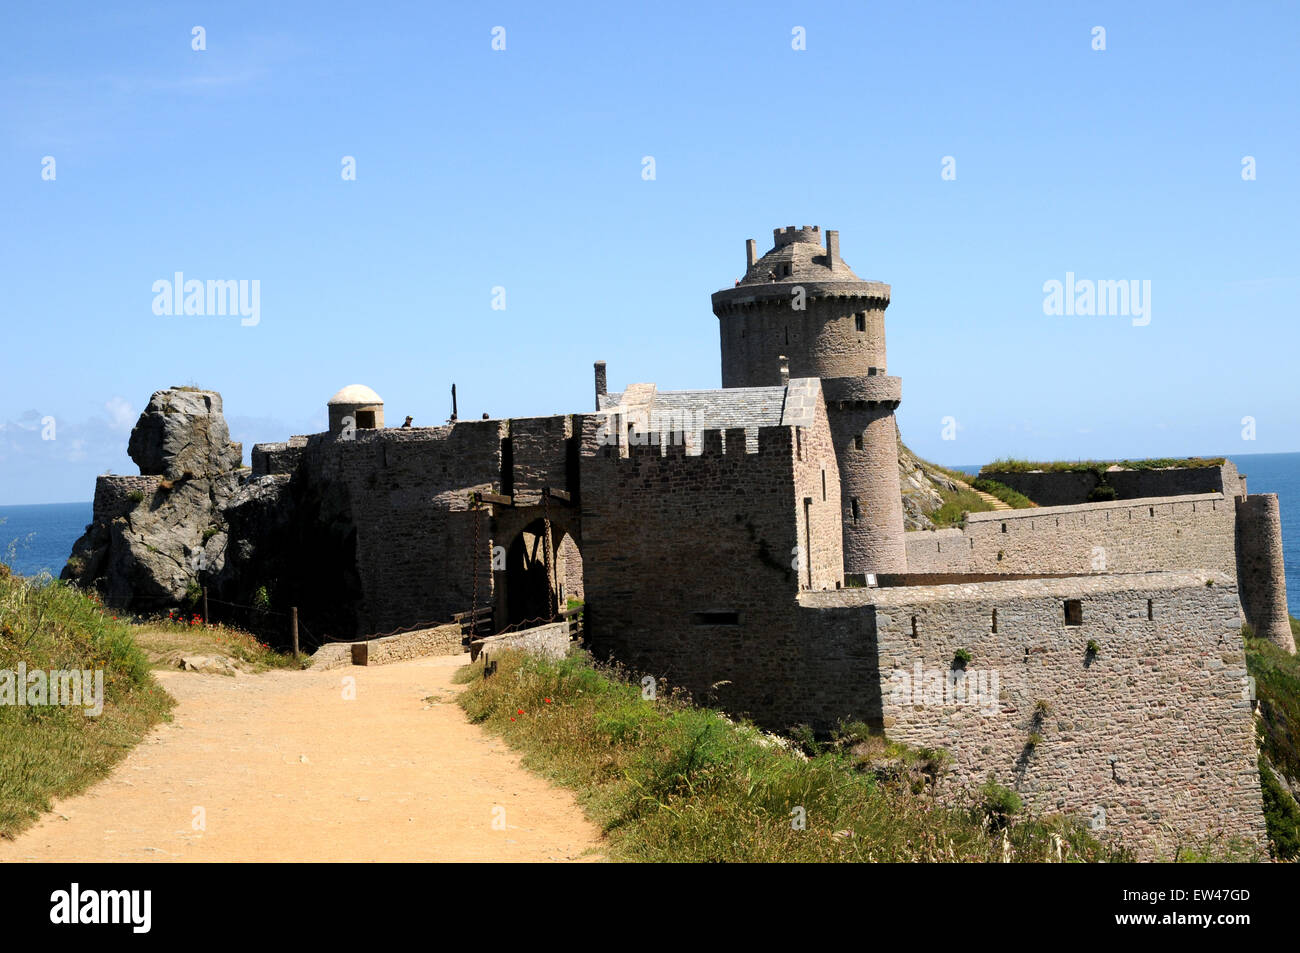 Fort La Latte, datant du xive siècle se trouve sur un promontoire rocheux surplombant l'état sauvage au nord du Cap-Breton, près de Fréhel. Banque D'Images